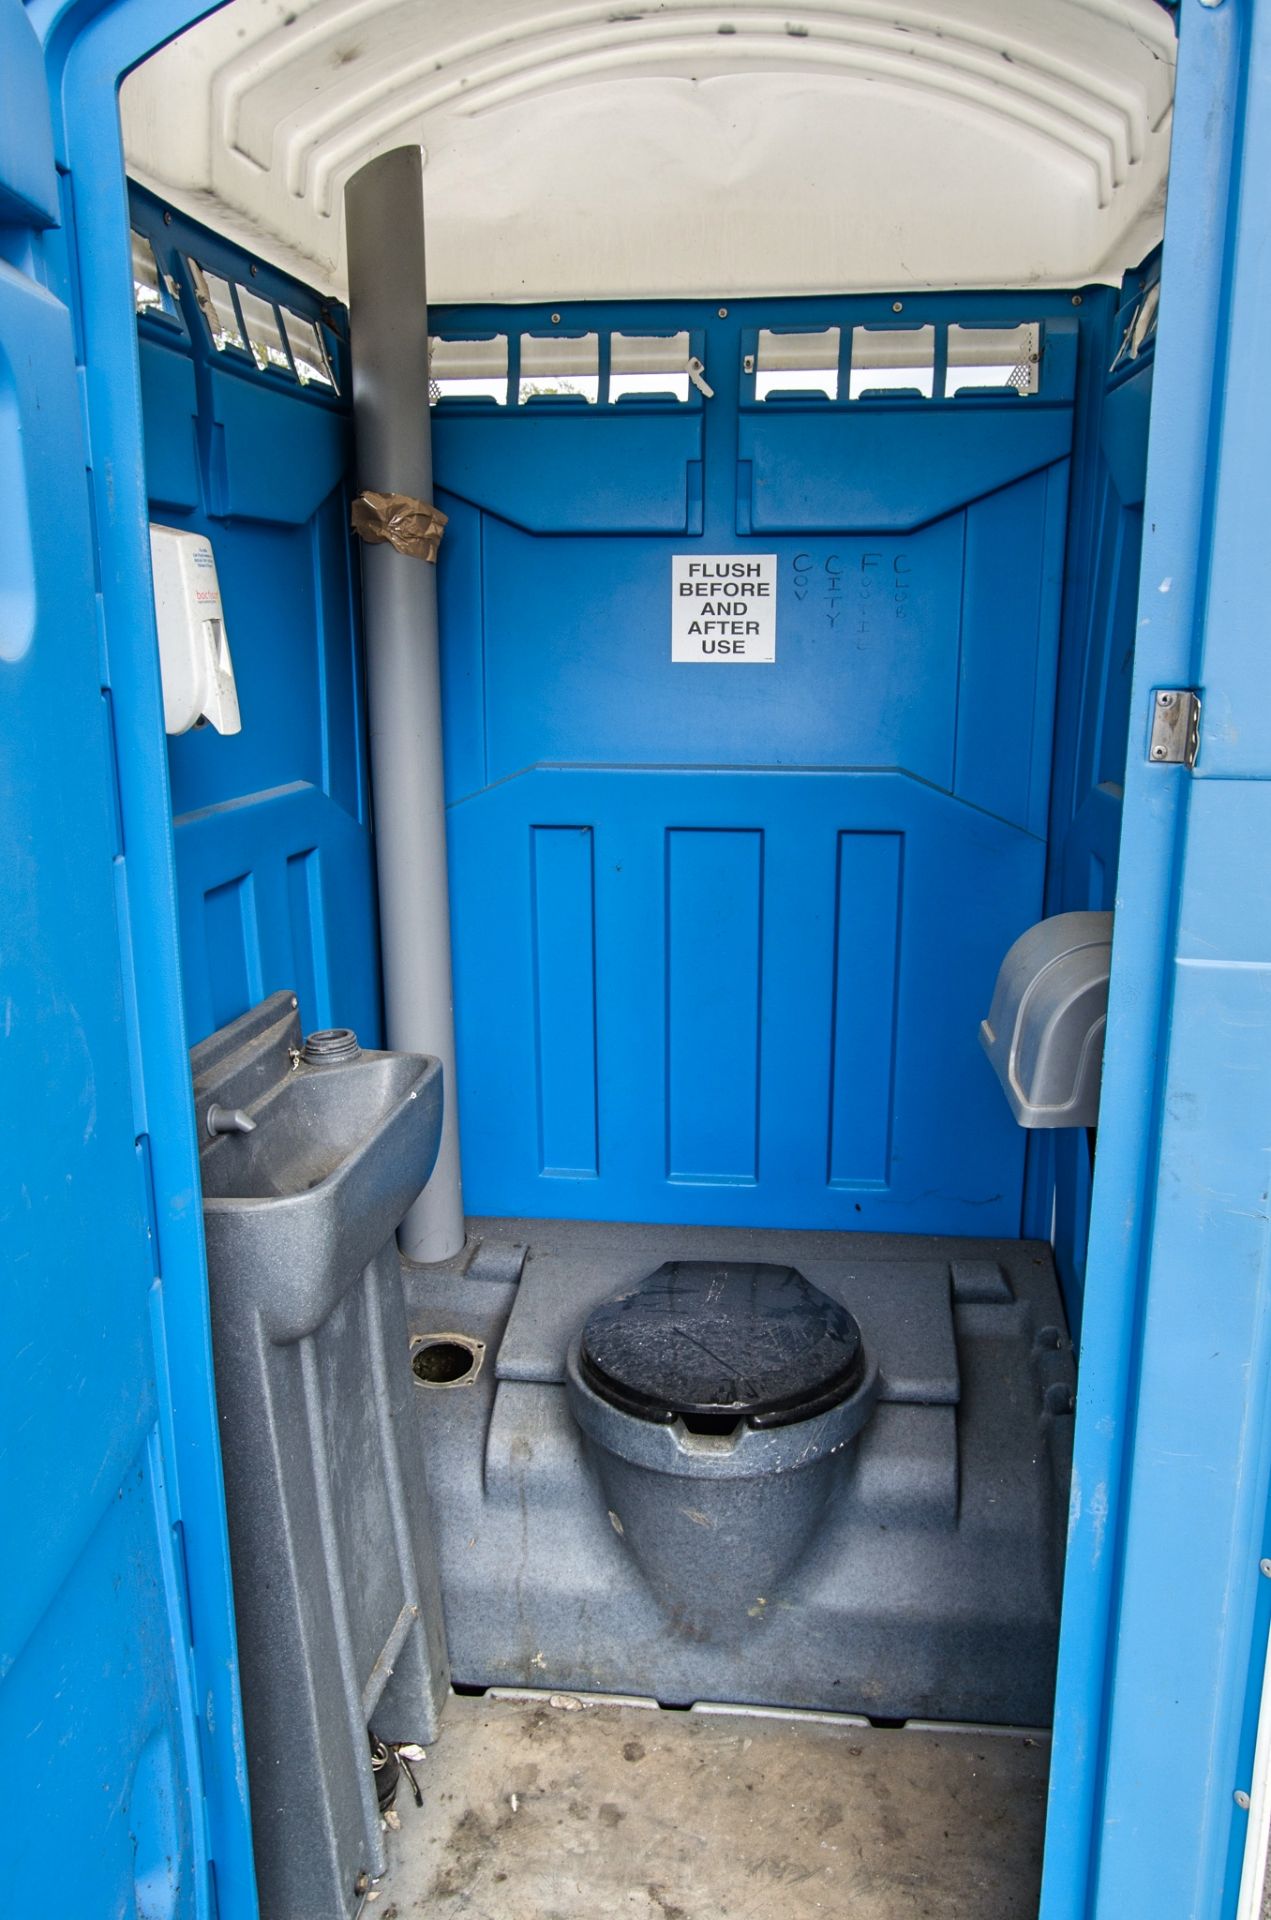 Portable toilet 19127027 - Bild 3 aus 3